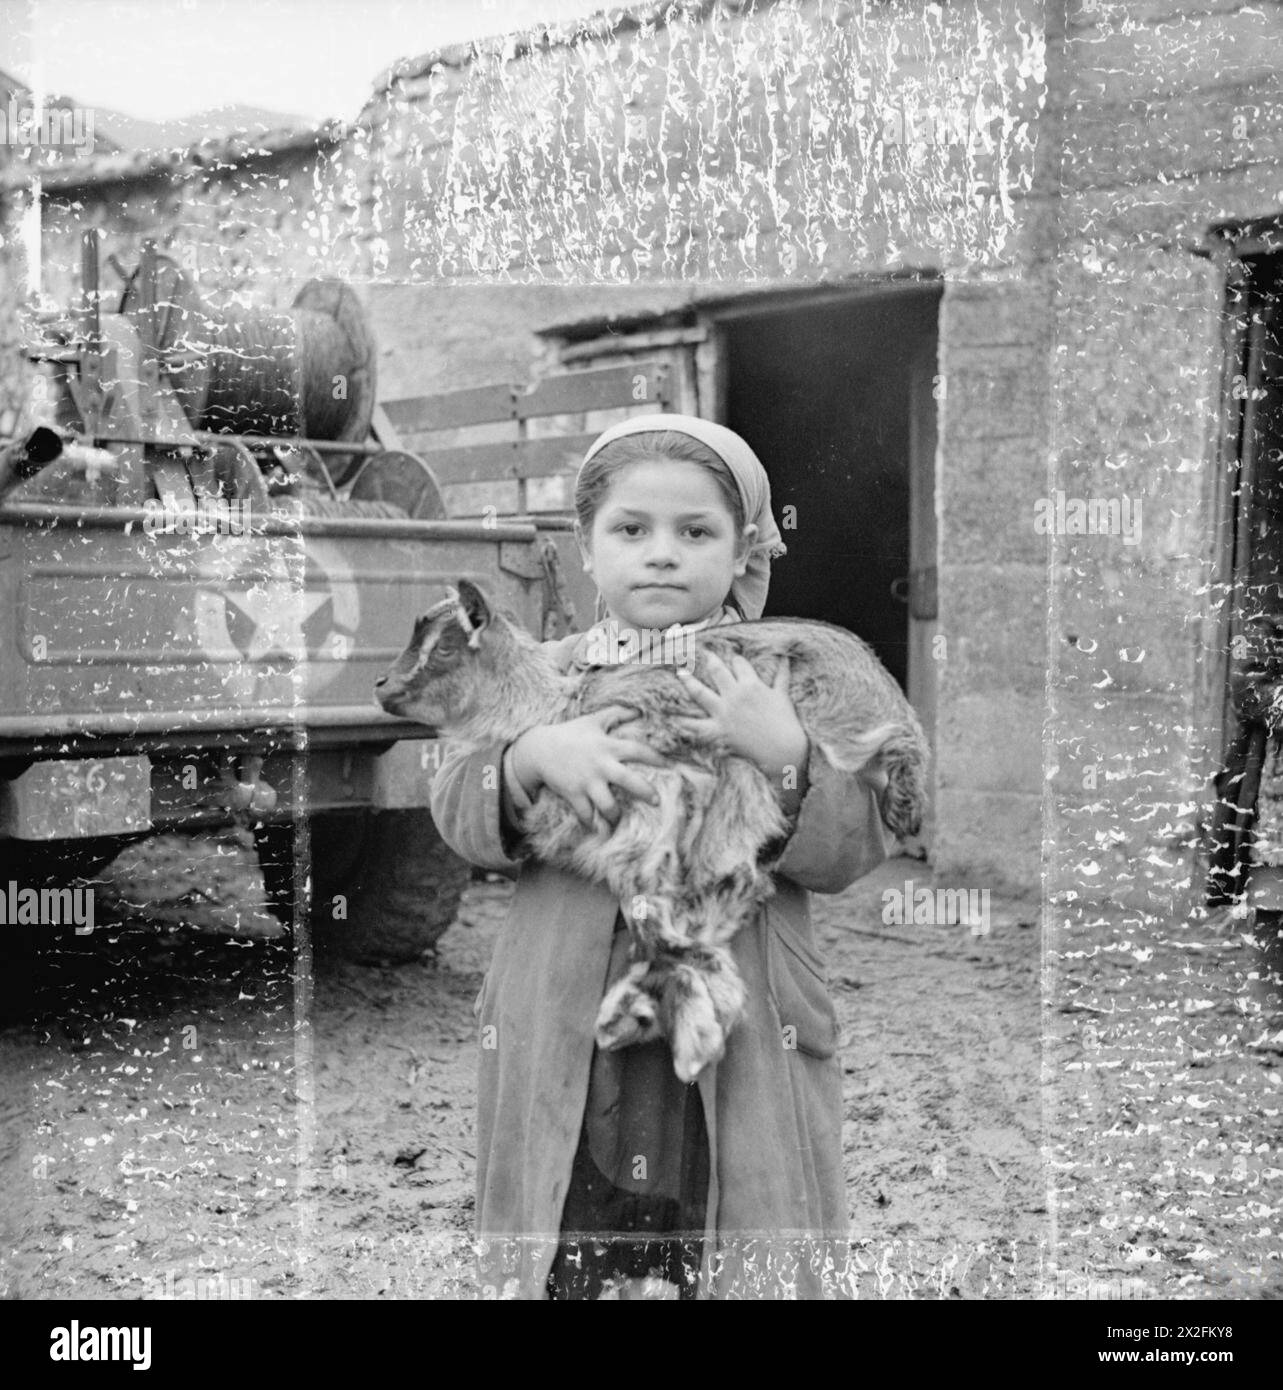 DIE SCHLACHT VON MONTE CASSINO, JANUAR-MAI 1944 - dieses kleine Mädchen, eine der Evakuierten, war entschlossen, ihre Hausziege mitzunehmen. Cassino, 27. Februar 1944. Zur Vorbereitung des dritten Angriffs auf Cassino wurden alle Zivilisten aus dem Gebiet in den von den Alliierten kontrollierten Teil Italiens evakuiert. Die alliierte Militärregierung hatte einen großen Auftrag, sie zu entfernen, 600 Stück pro Tag. In Anbetracht der Tatsache, dass Fahrzeuge für den Transport von Kriegsmaterial und die schlechten Bedingungen der Gleise benötigt wurden, die gerade breit genug waren, um einen LKW zu nehmen, war dies eine bemerkenswerte Leistung. Beachten Sie die Markierungen Stockfoto